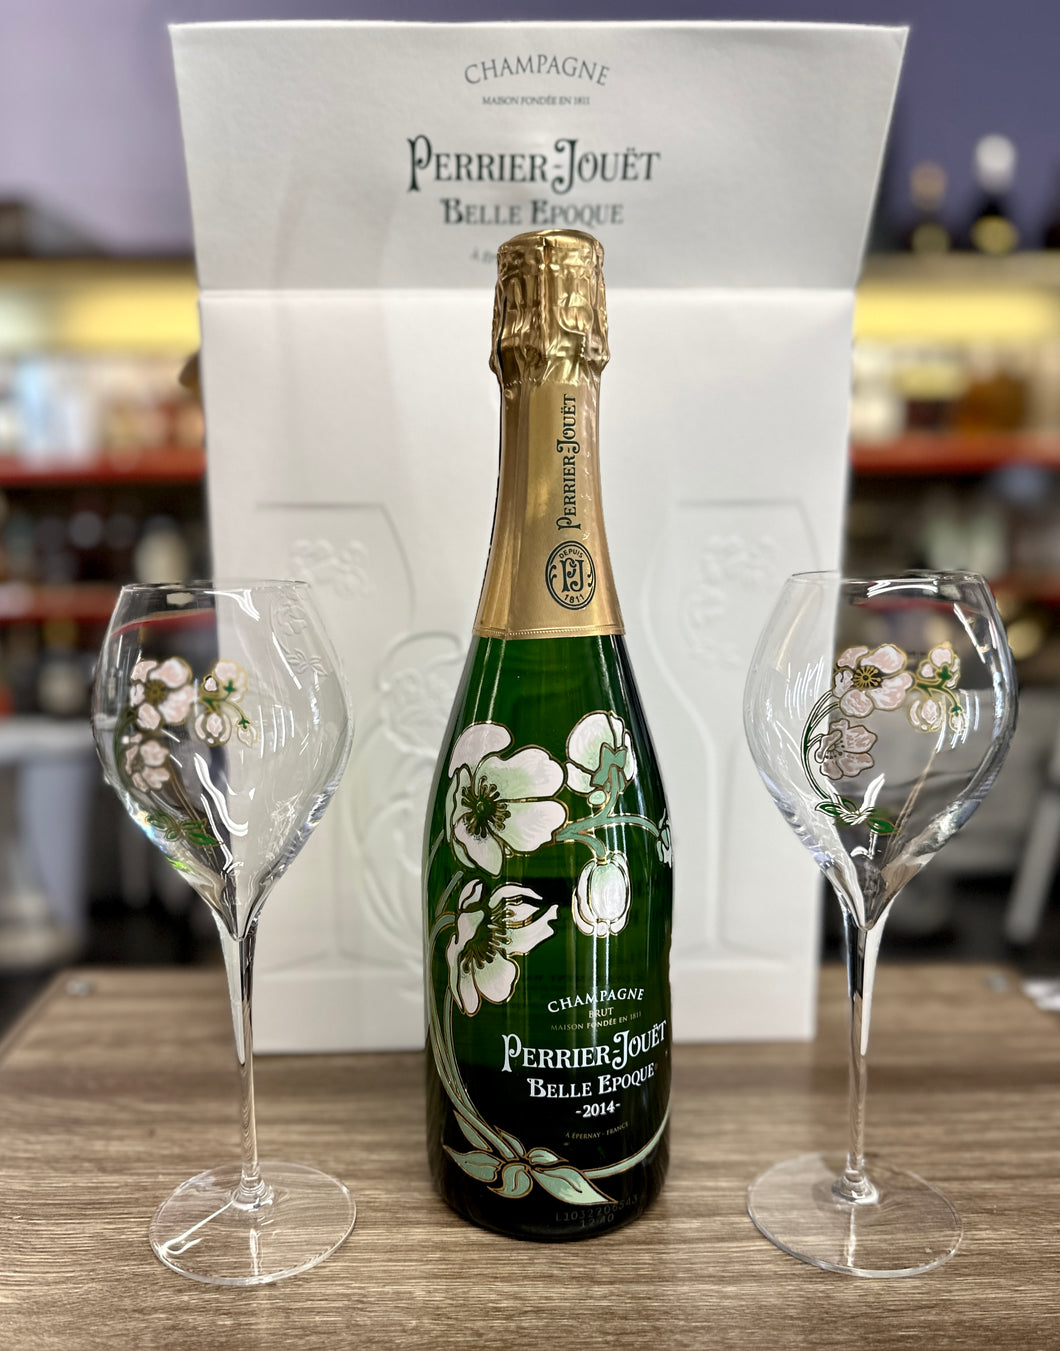 Perrier-Jouet Belle Epoque-Fleur de Champagne Millesime Brut 2014, gift set with 2 glasses